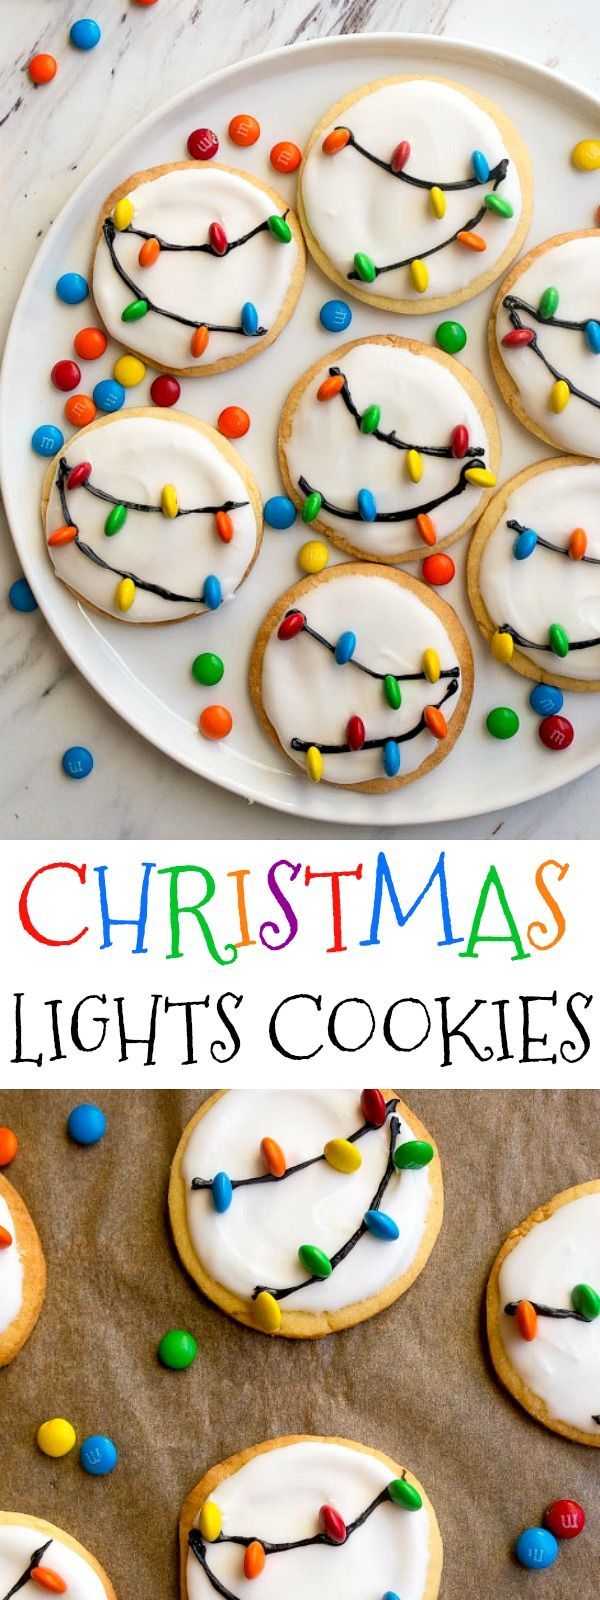 Christmas Lights Cookies - Christmas Lights Cookies -   24 xmas food easy diy ideas